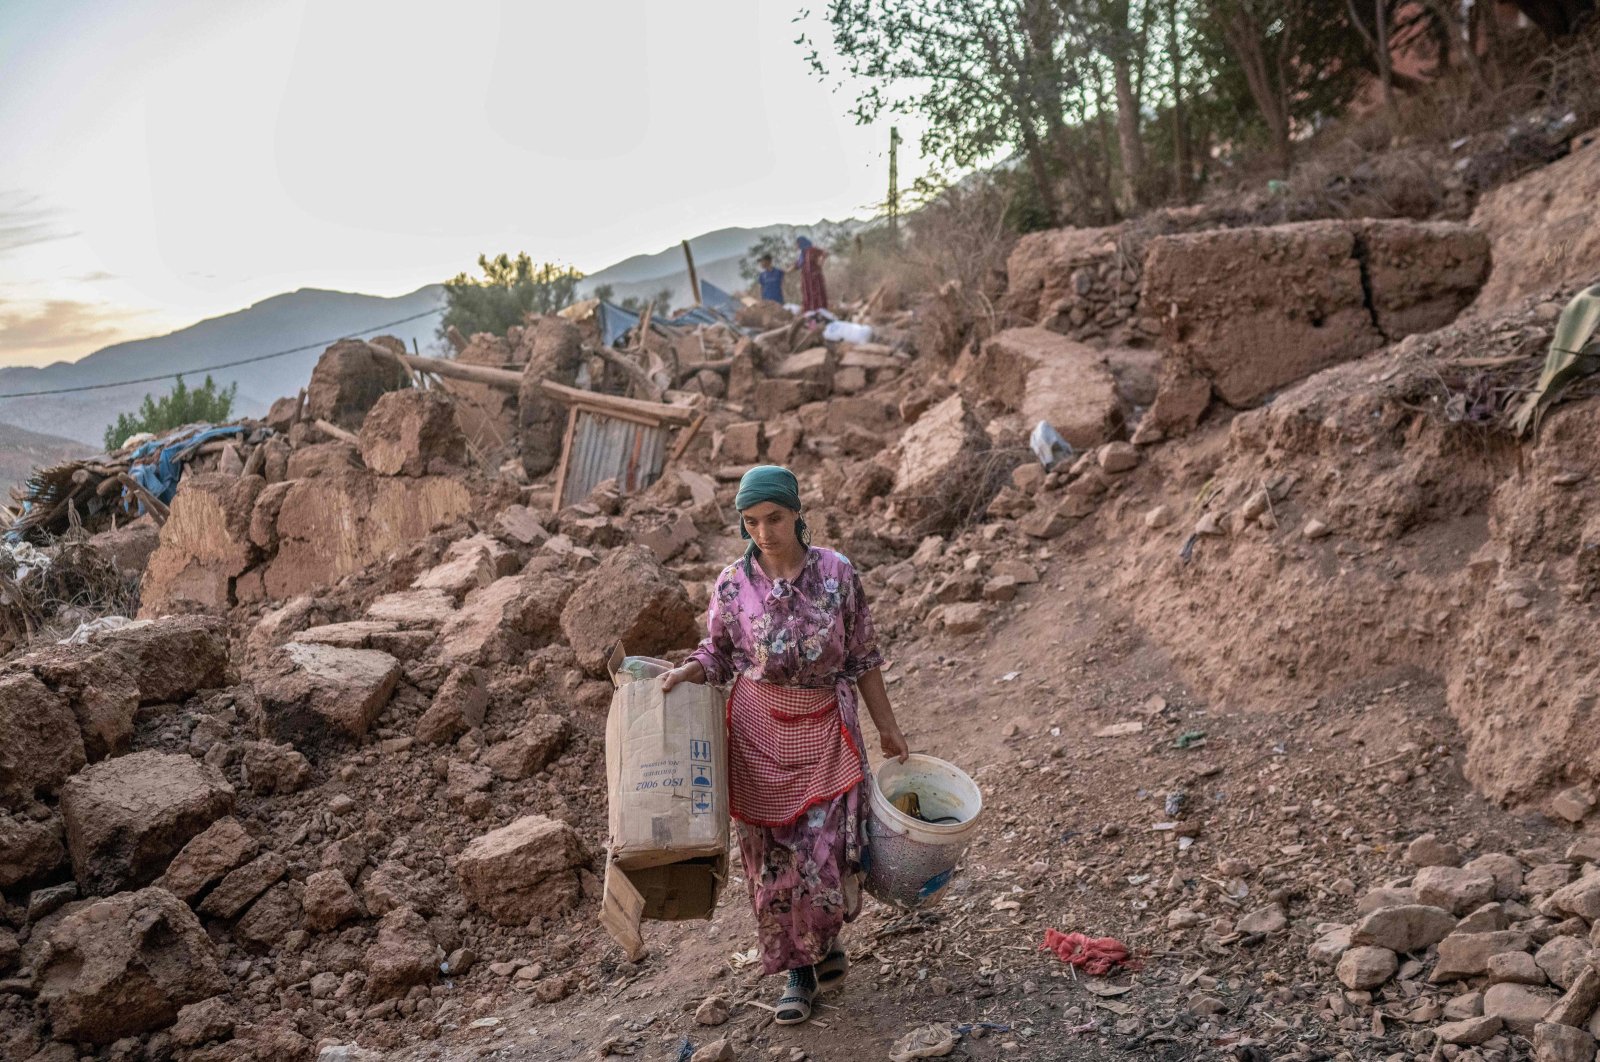 Morocco earthquake survivors ‘feel abandoned’ amid lack of aid